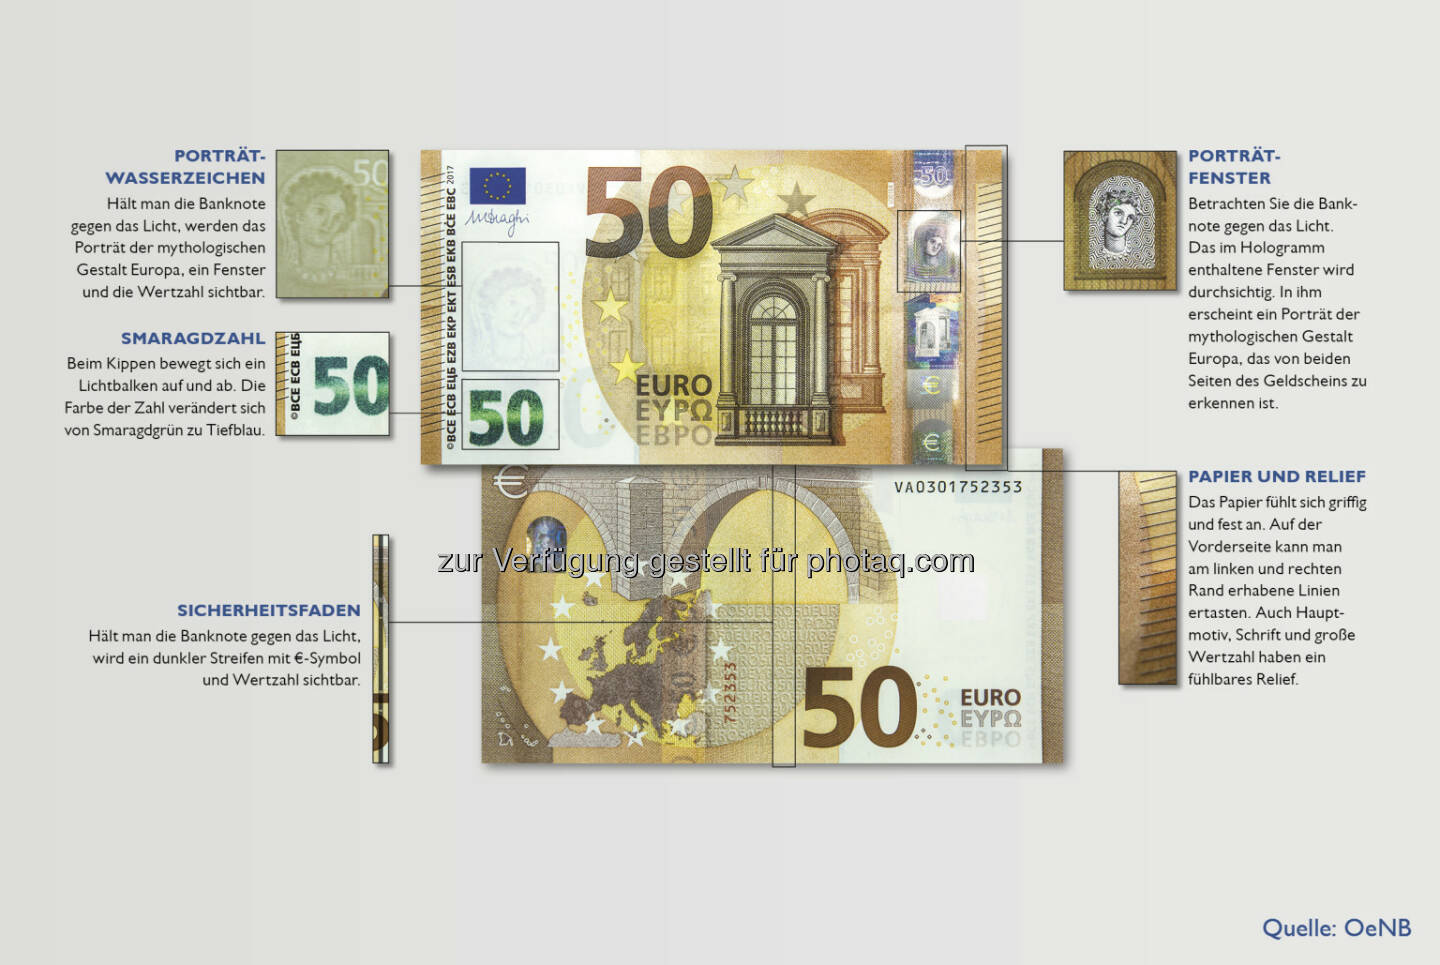 Sicherheitsmerkmale der neuen 50-EUR-Banknote - Oesterreichische Nationalbank: Neue 50-Euro-Banknote ab heute im Umlauf (Fotocredit: OeNB)